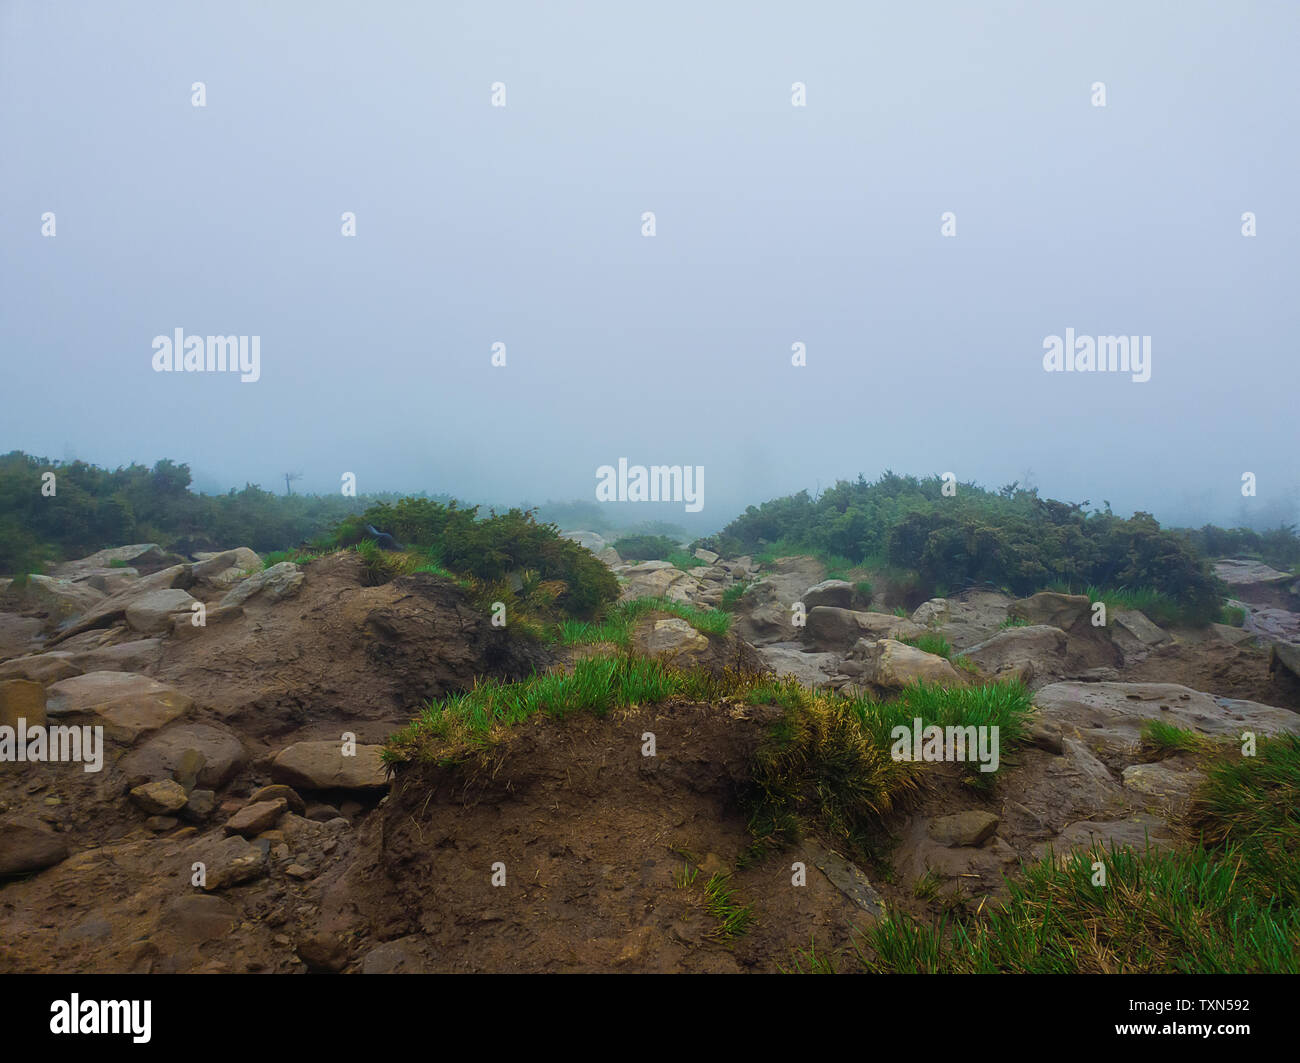 Terrain montagne boueux comme un mélange d'argile et de plantes typiques des roches pour la saison du printemps sur les collines des Carpates. Gloomy foggy landscape with low vis Banque D'Images